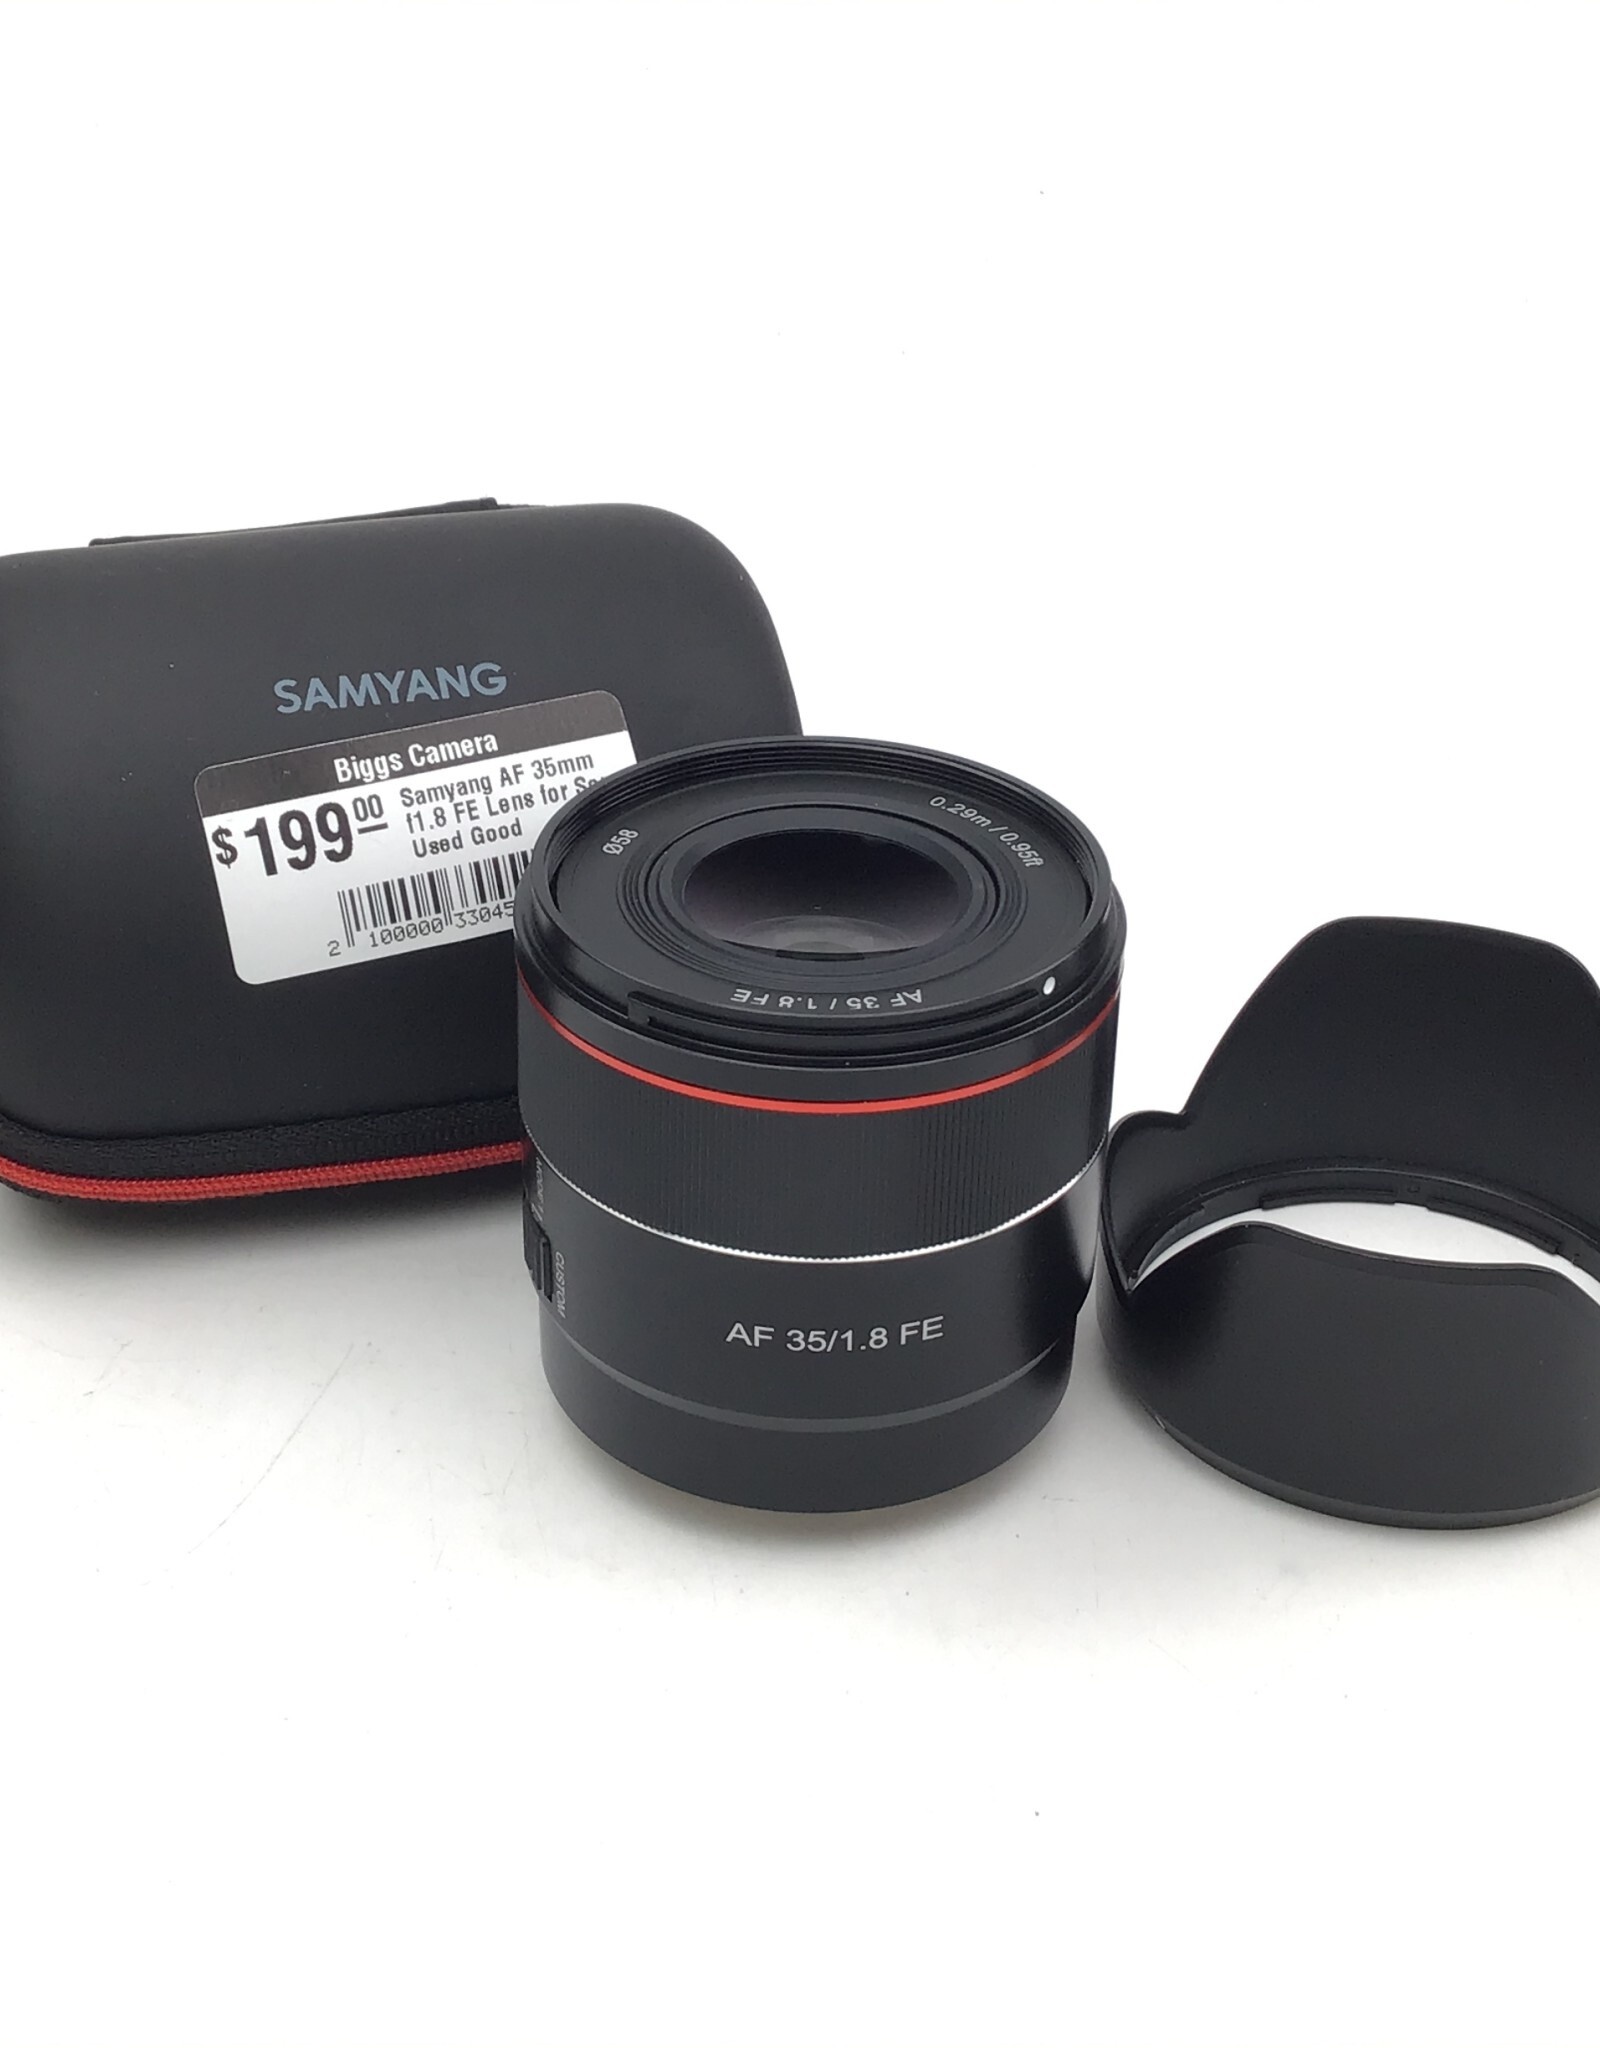 Samyang Samyang AF 35mm f1.8 FE Lens for Sony Used Good